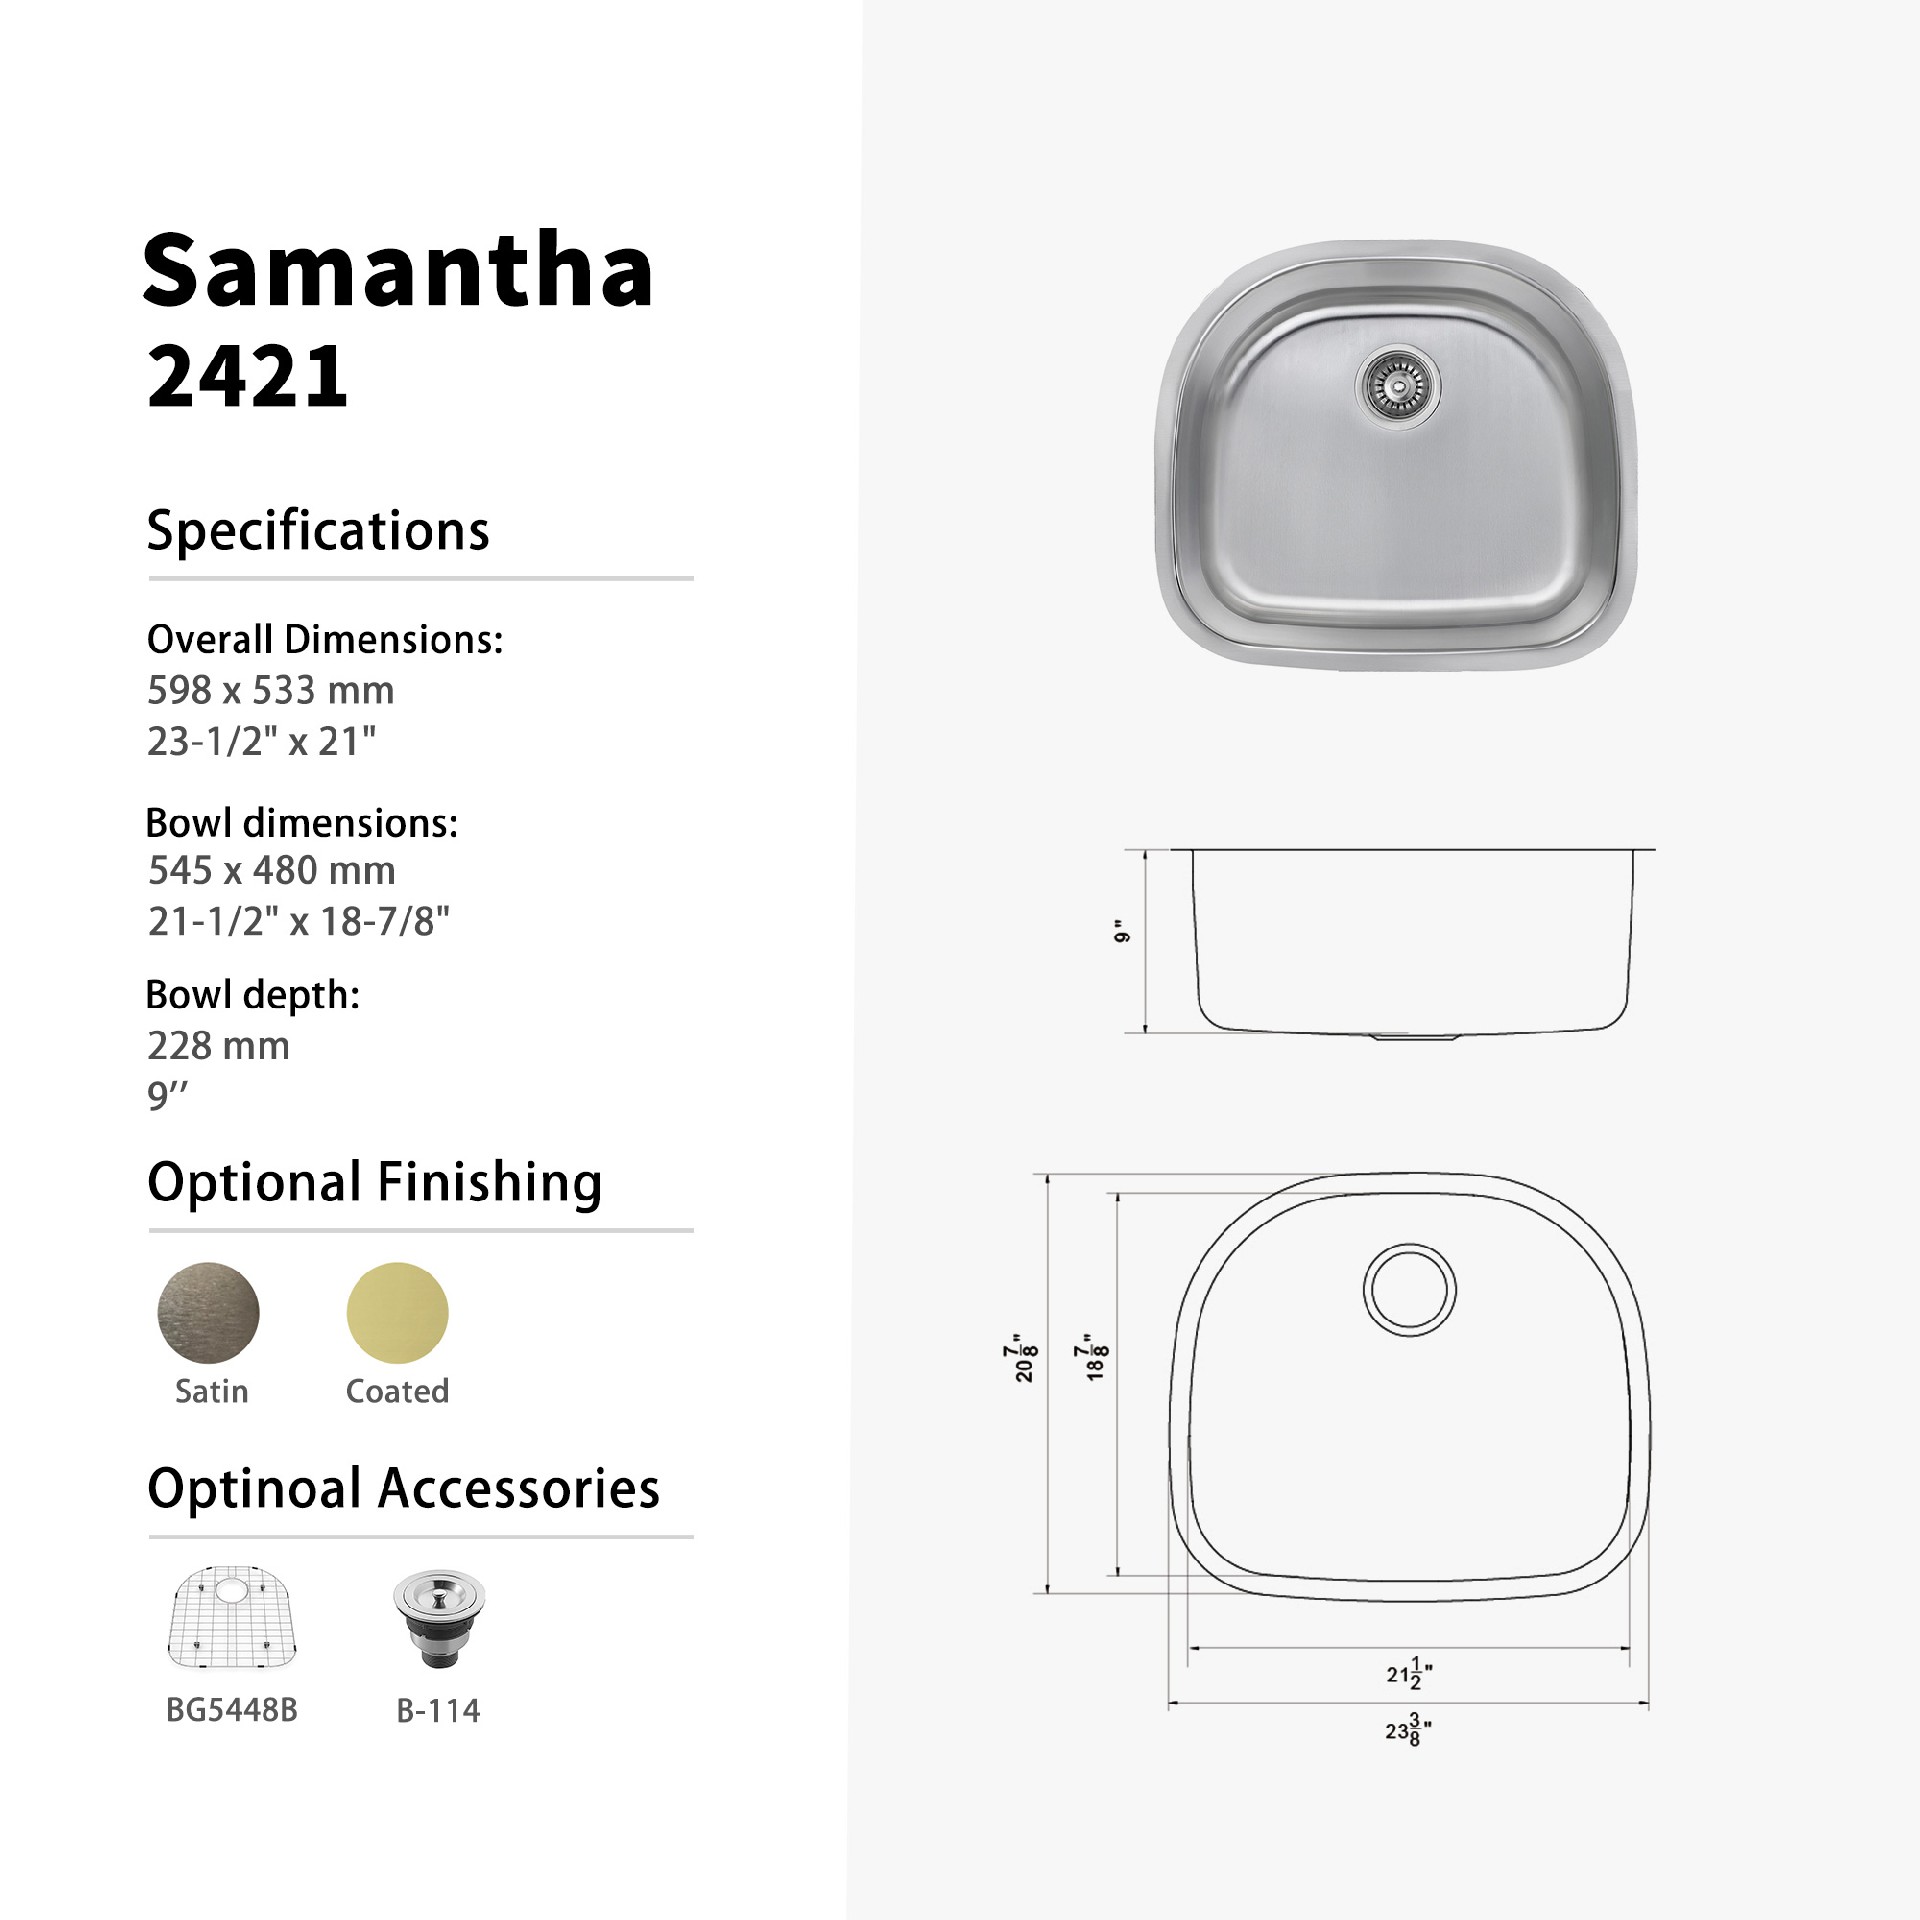 Samantha.2421